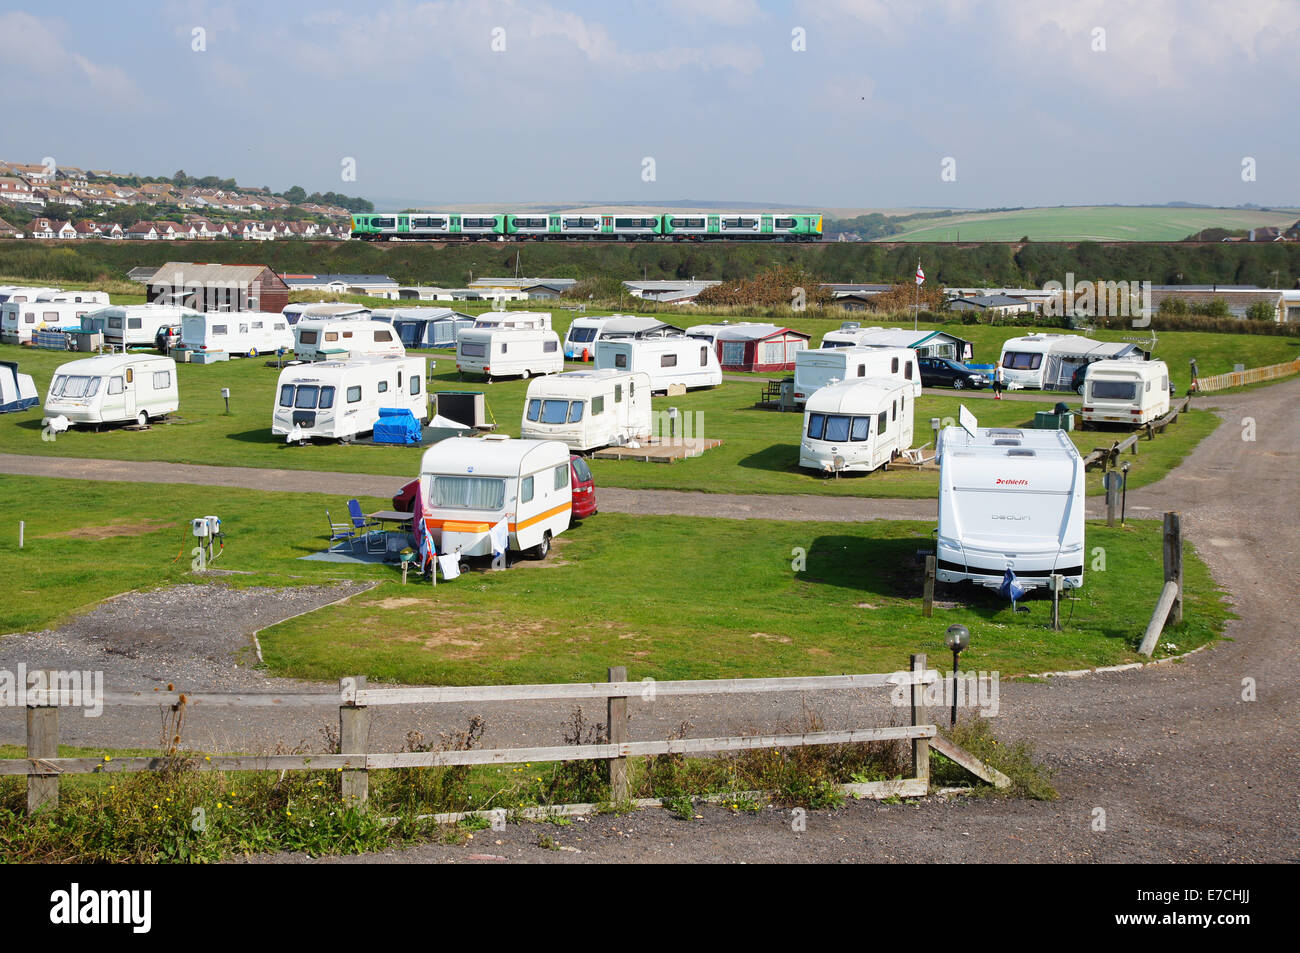 Un site de caravane, camping-cars caravanes campeurs à côté de la plage à Seaford East Sussex Angleterre Royaume-Uni Banque D'Images